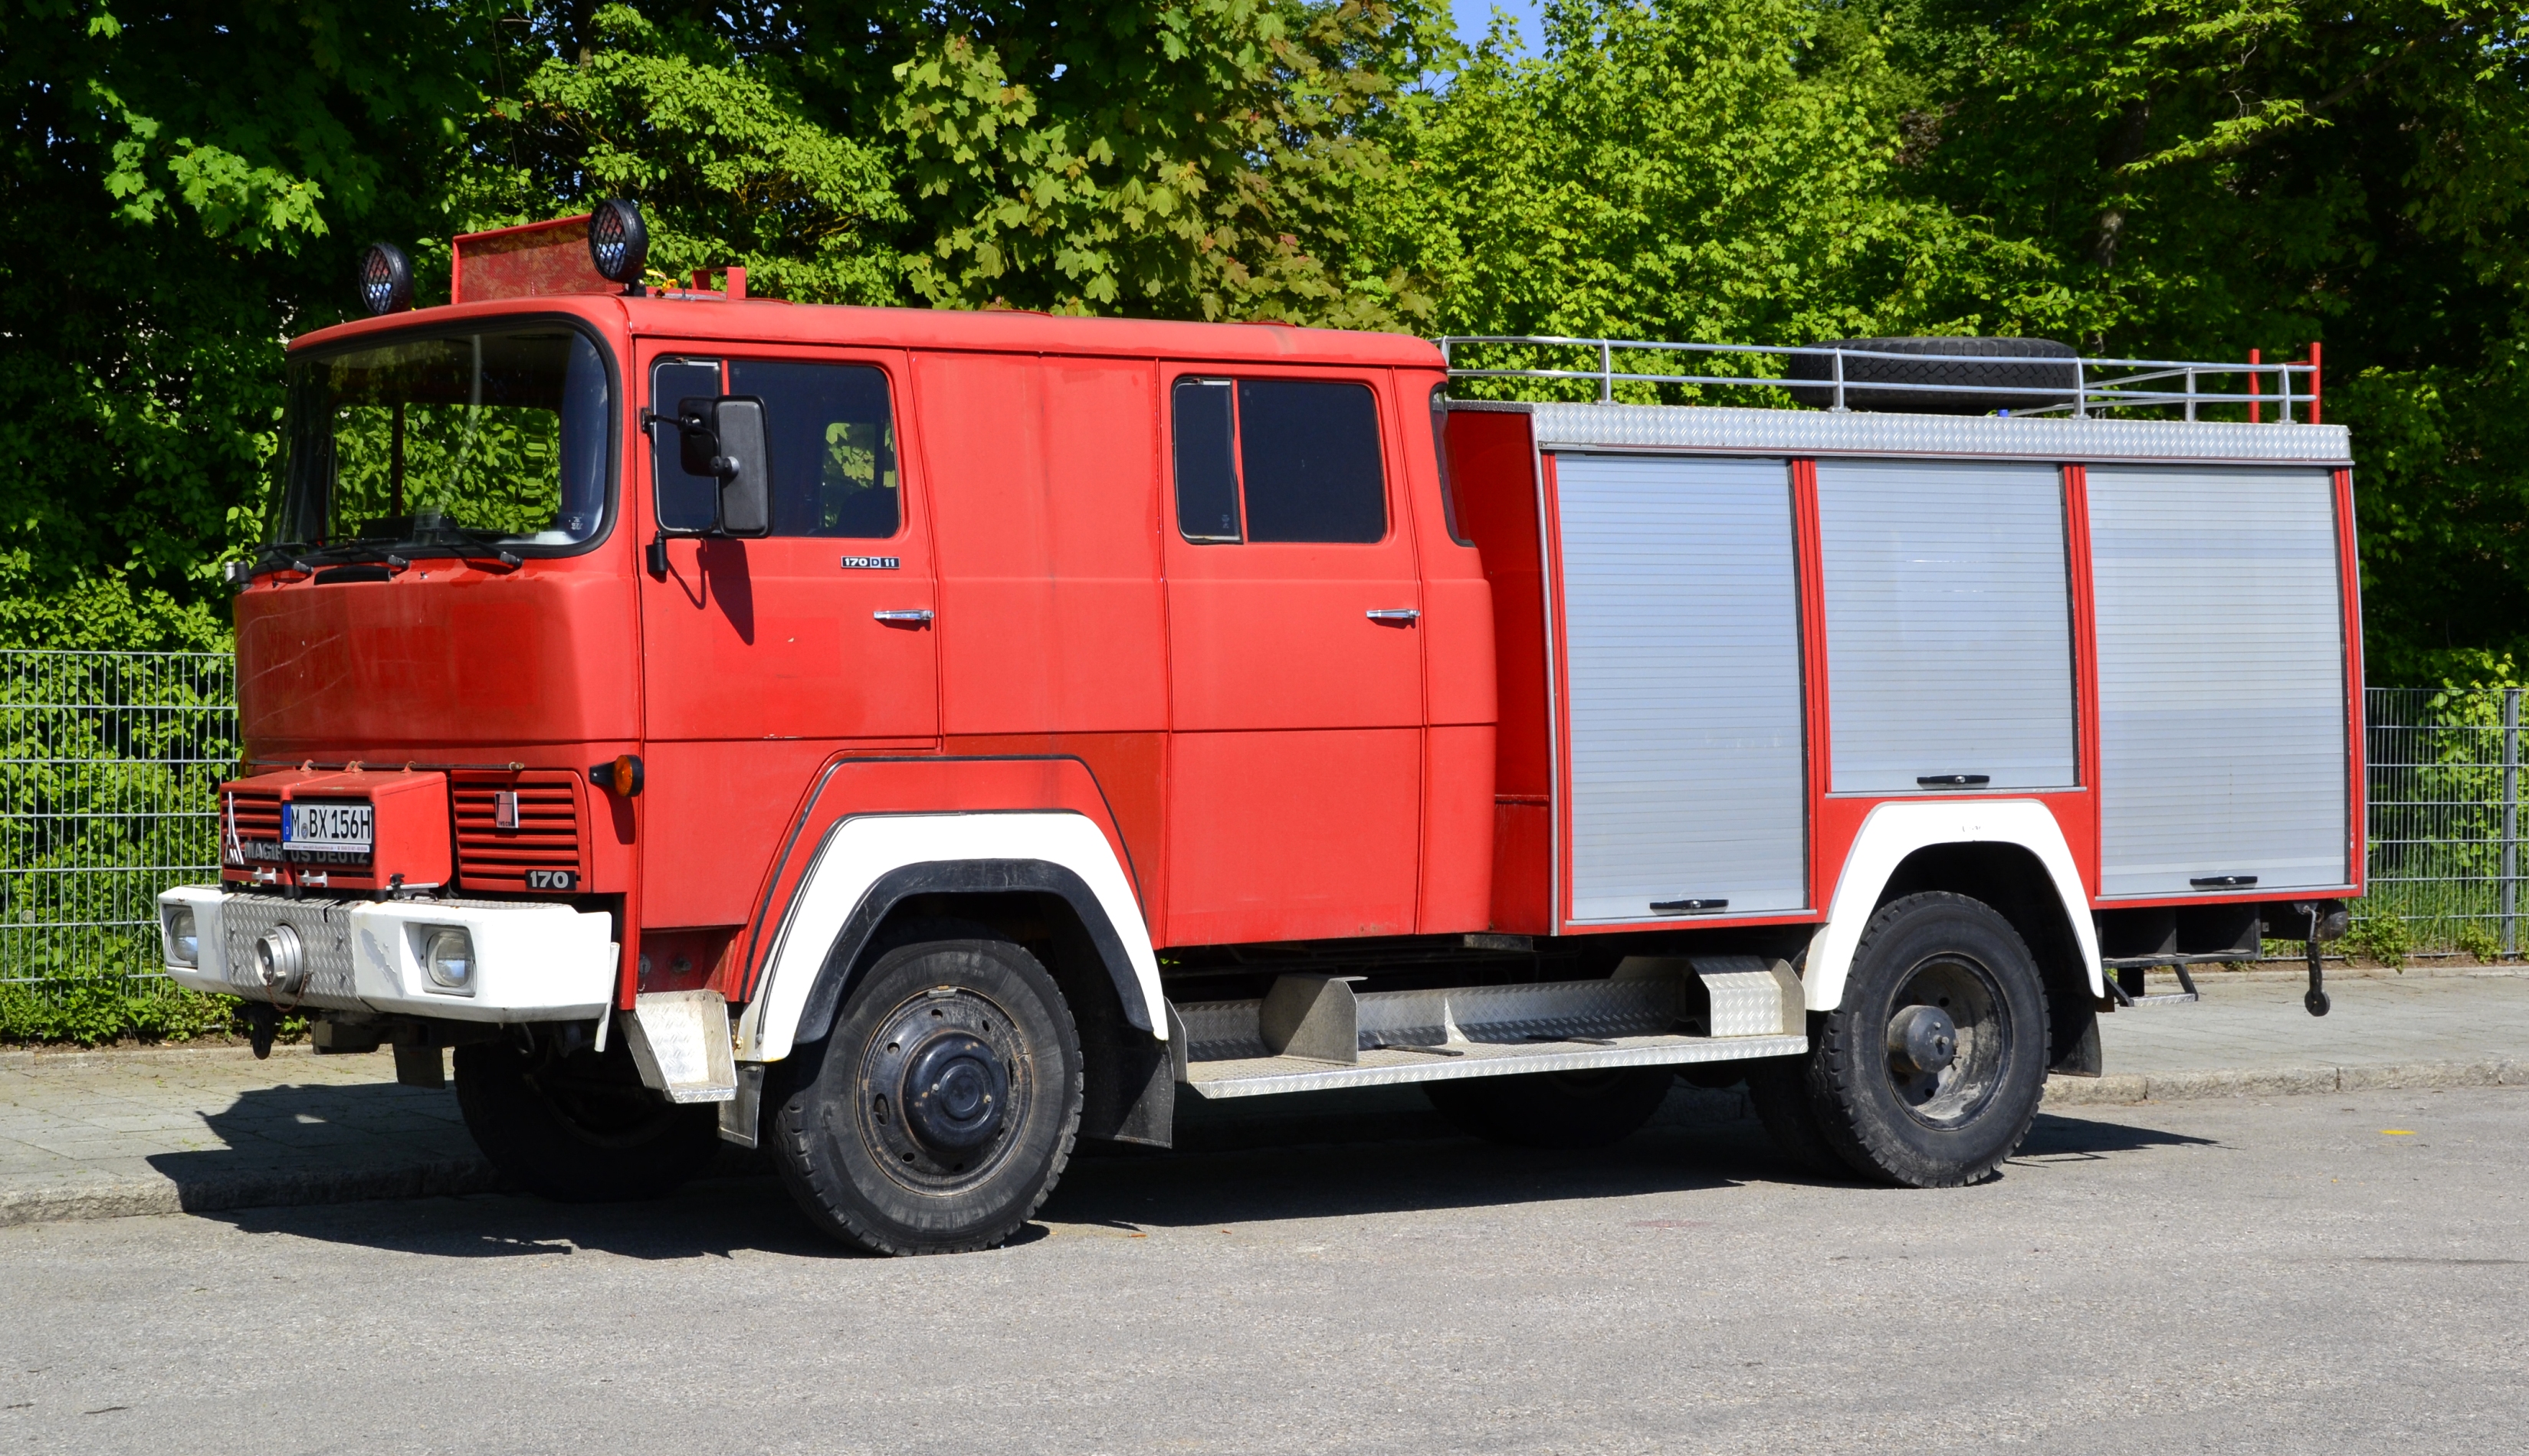 Former Magirus-Deutz 170D11 fire engine in Bavaria